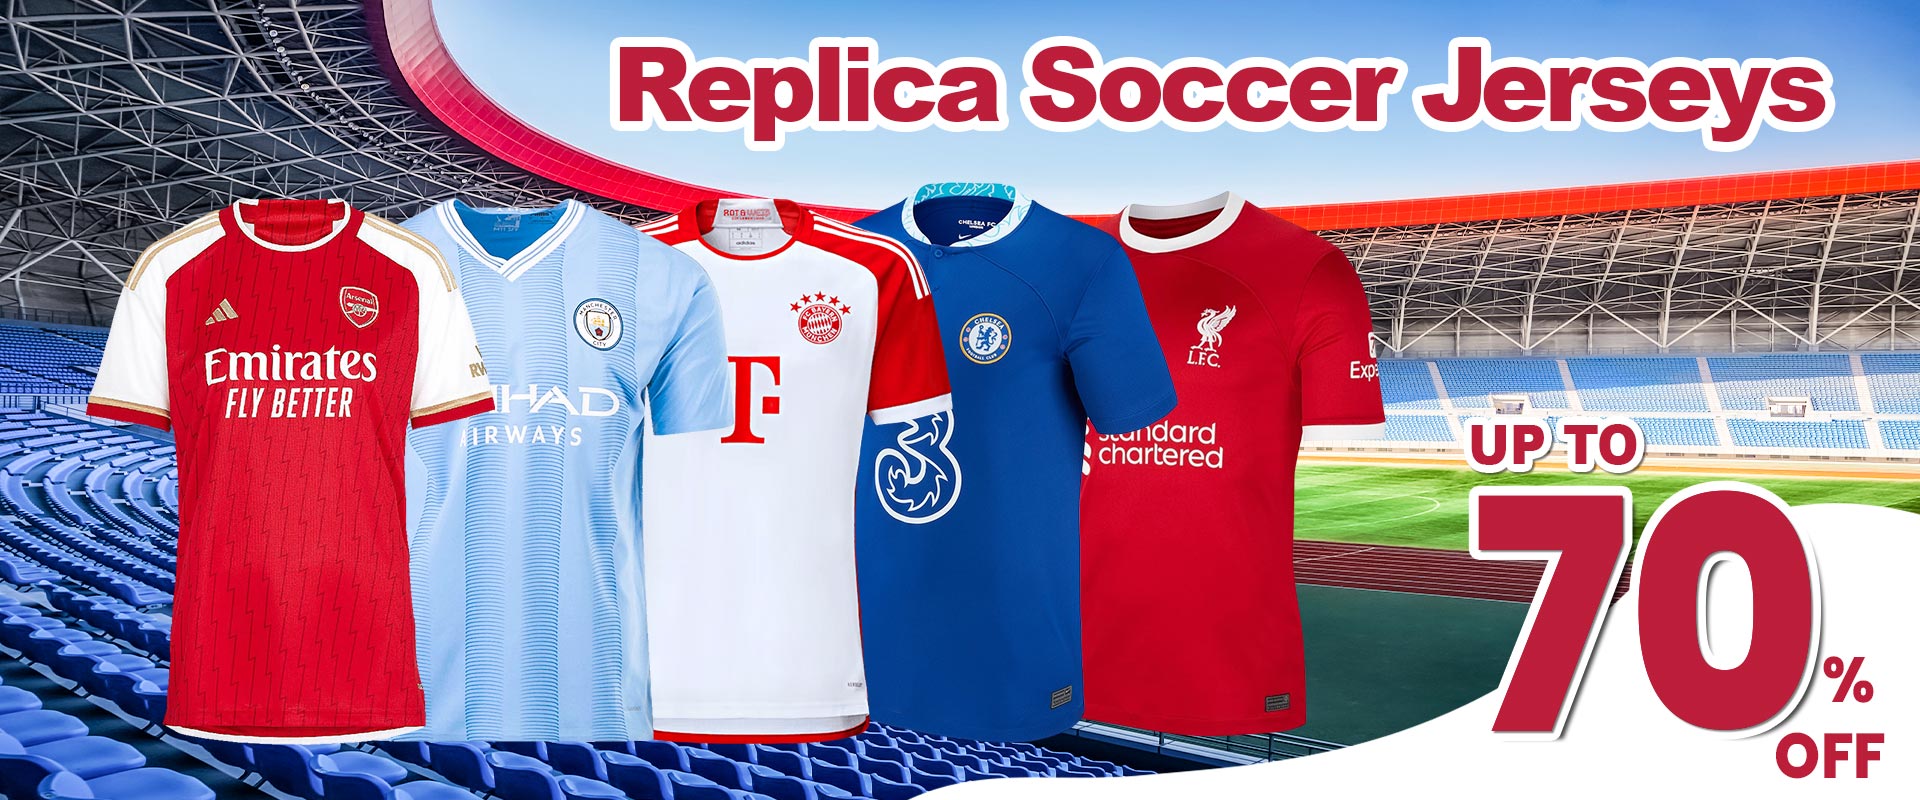 order replica soccer jerseys